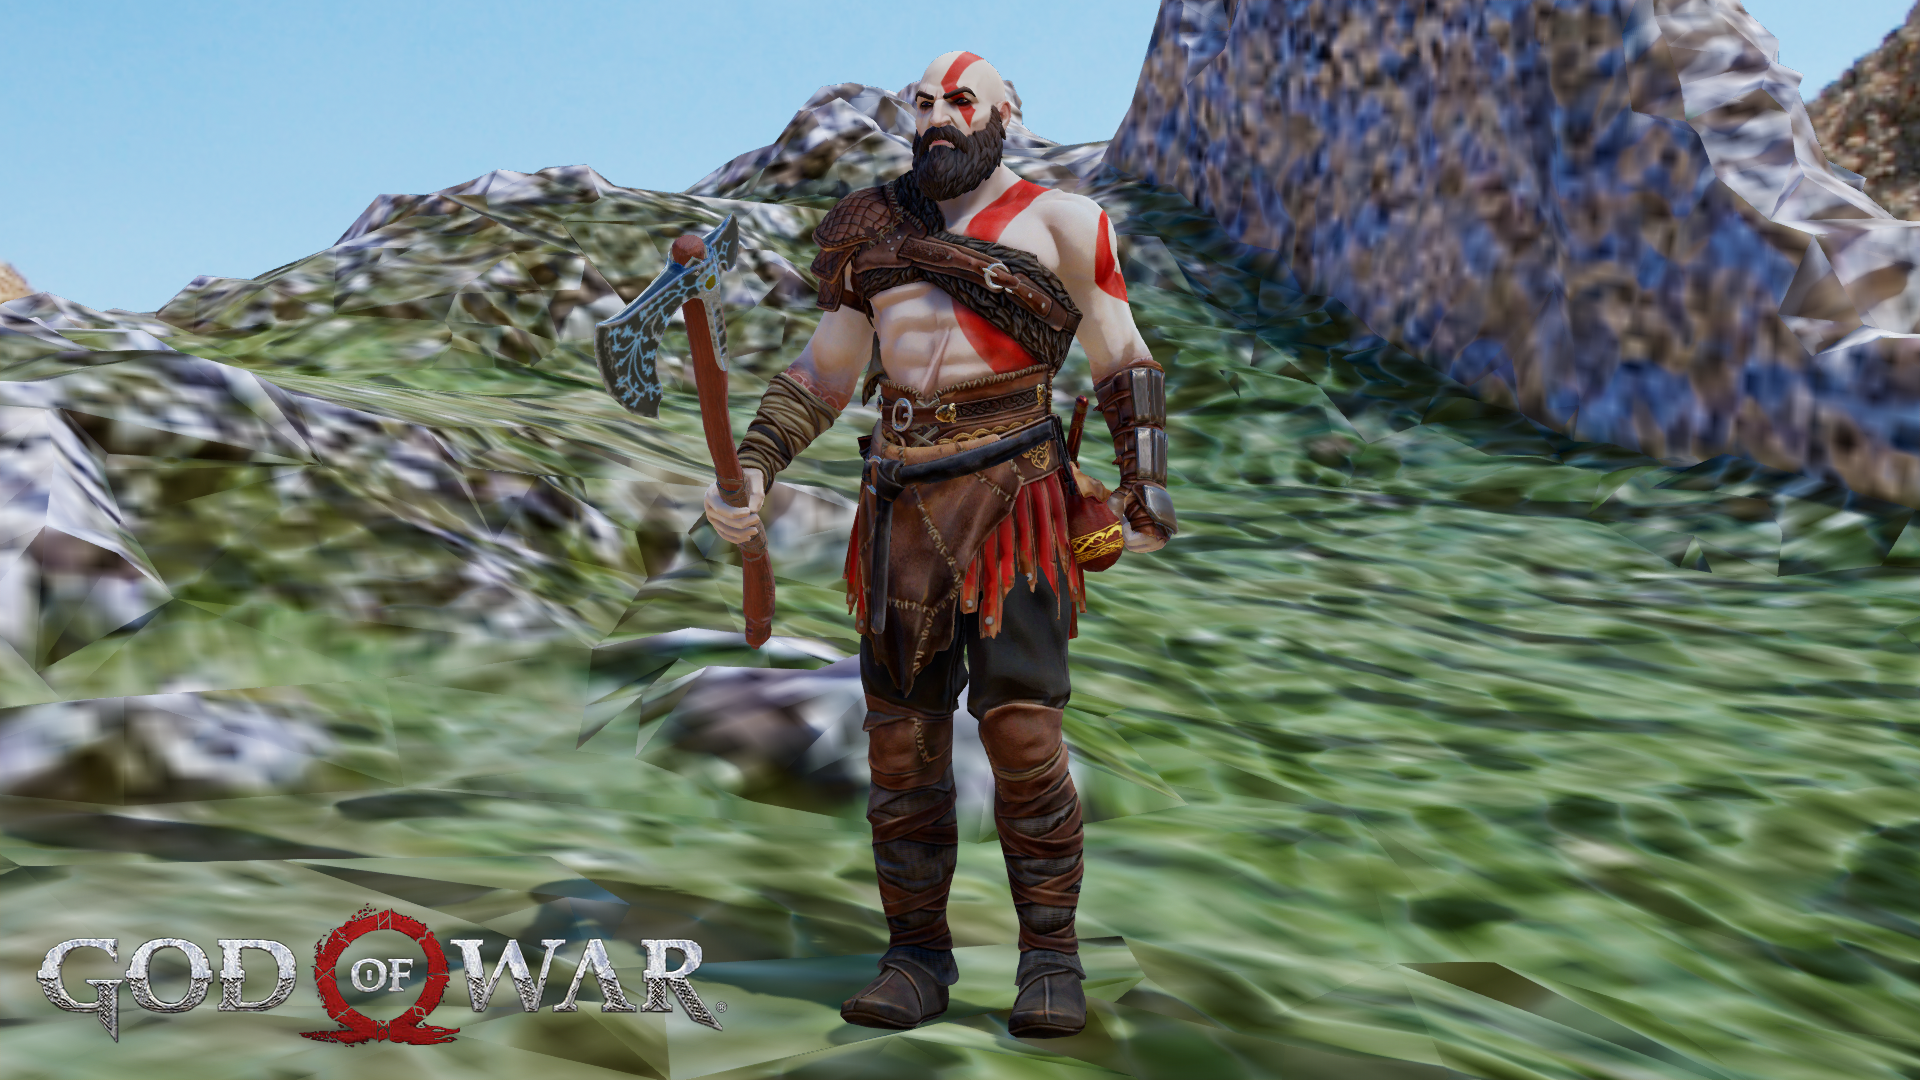 Mmd Kratos Fortnite Dl By Crossmmd On Deviantart